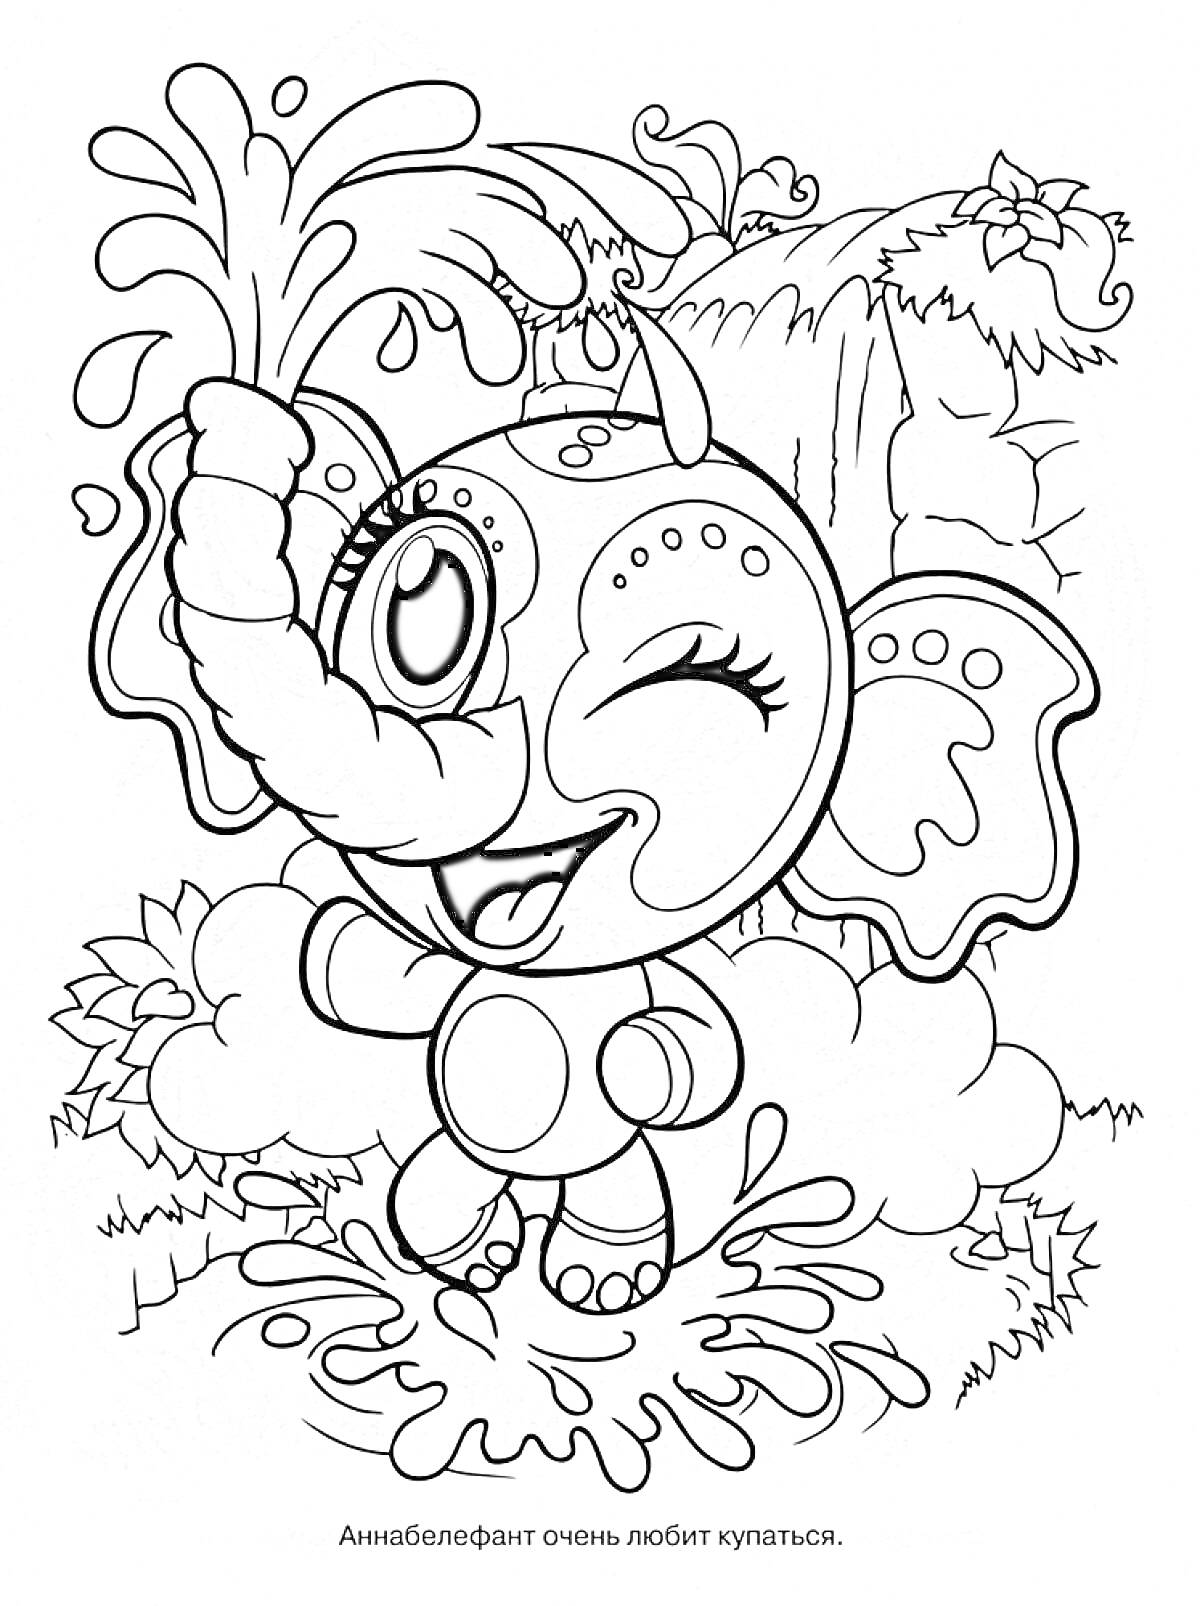 Раскраска Слонёнок в джунглях, играющий с водой и фонтанчиком из хобота